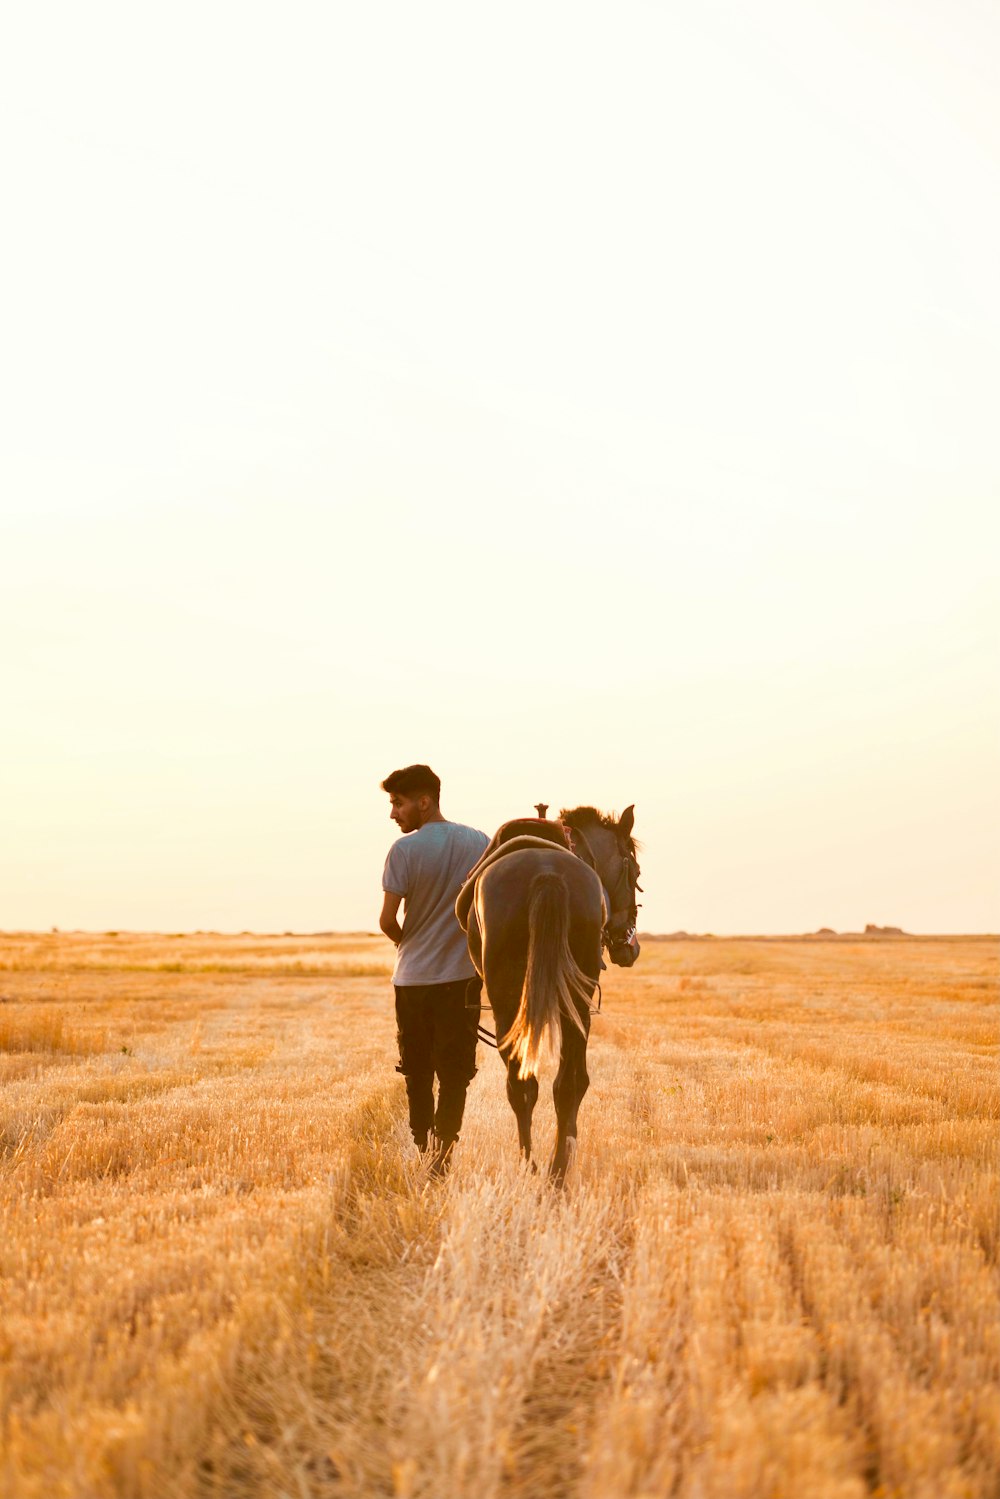 Un homme promenant un cheval dans un champ d’herbe sèche